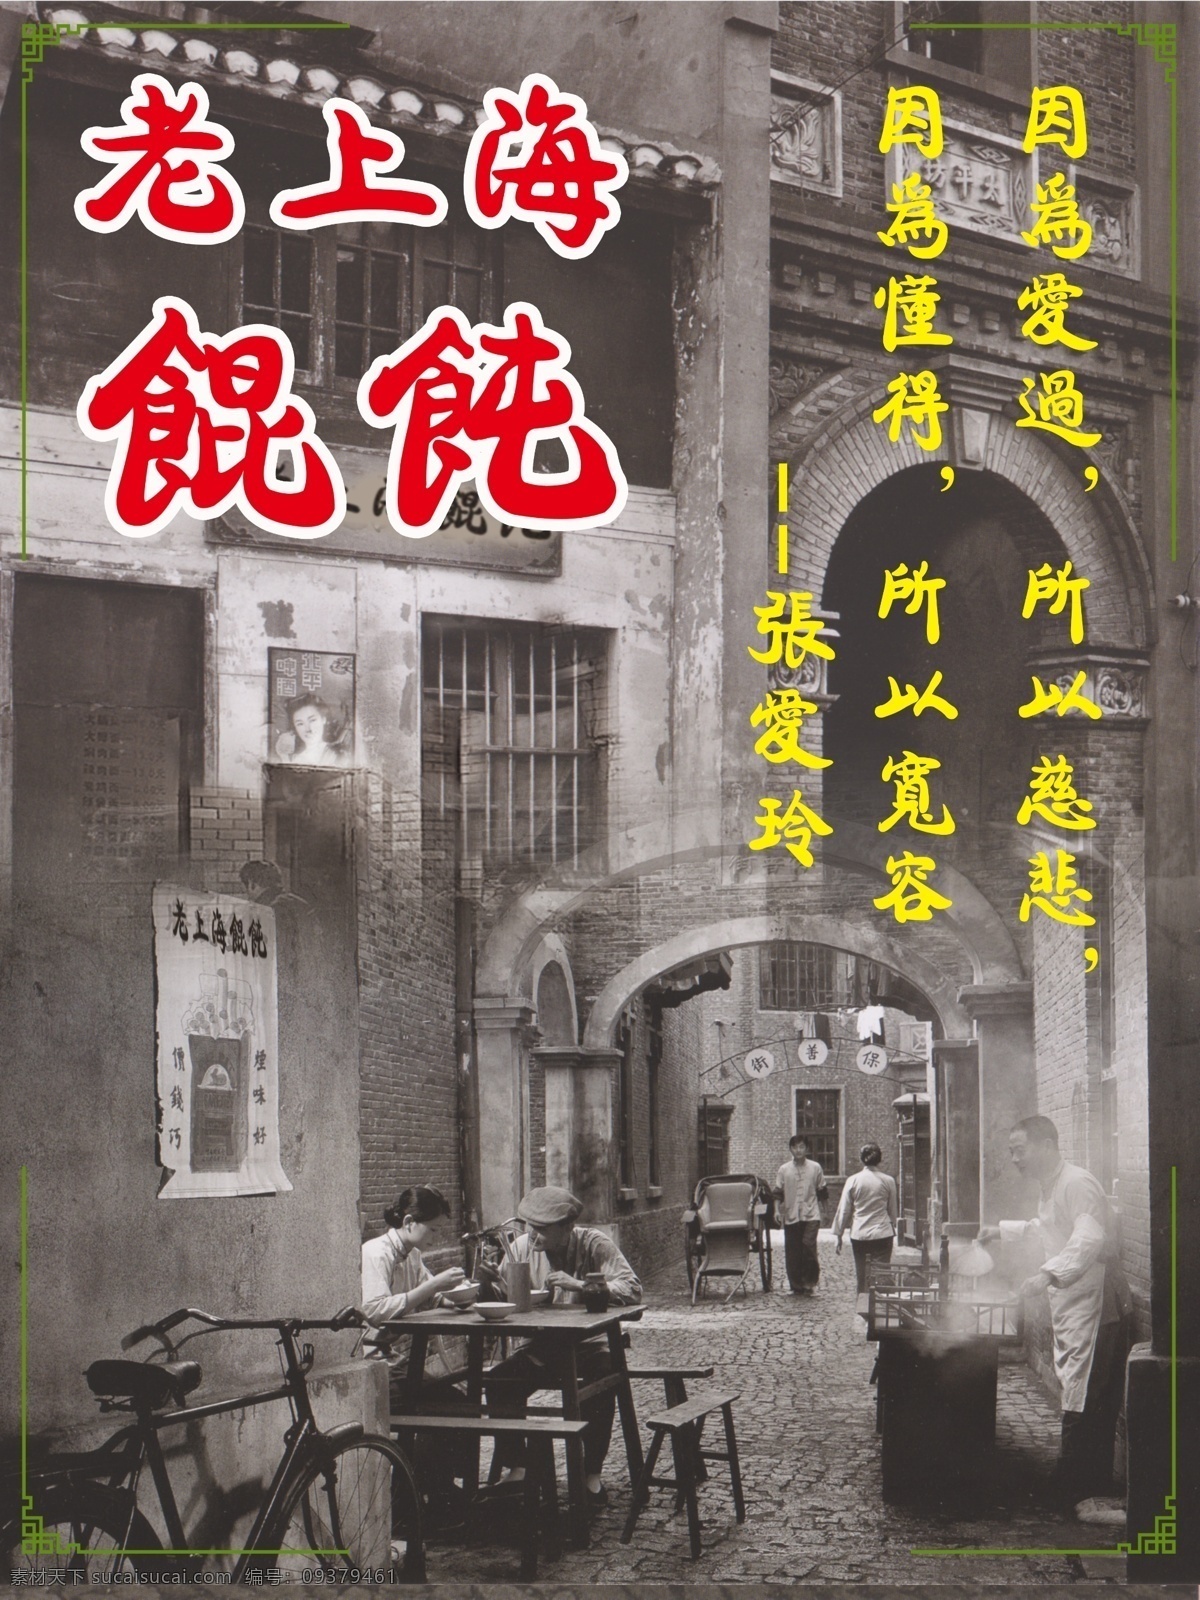 老上海馄饨 老上海 馄饨 黑白照 旧街景 馄饨担子 忆旧 张爱玲 模板